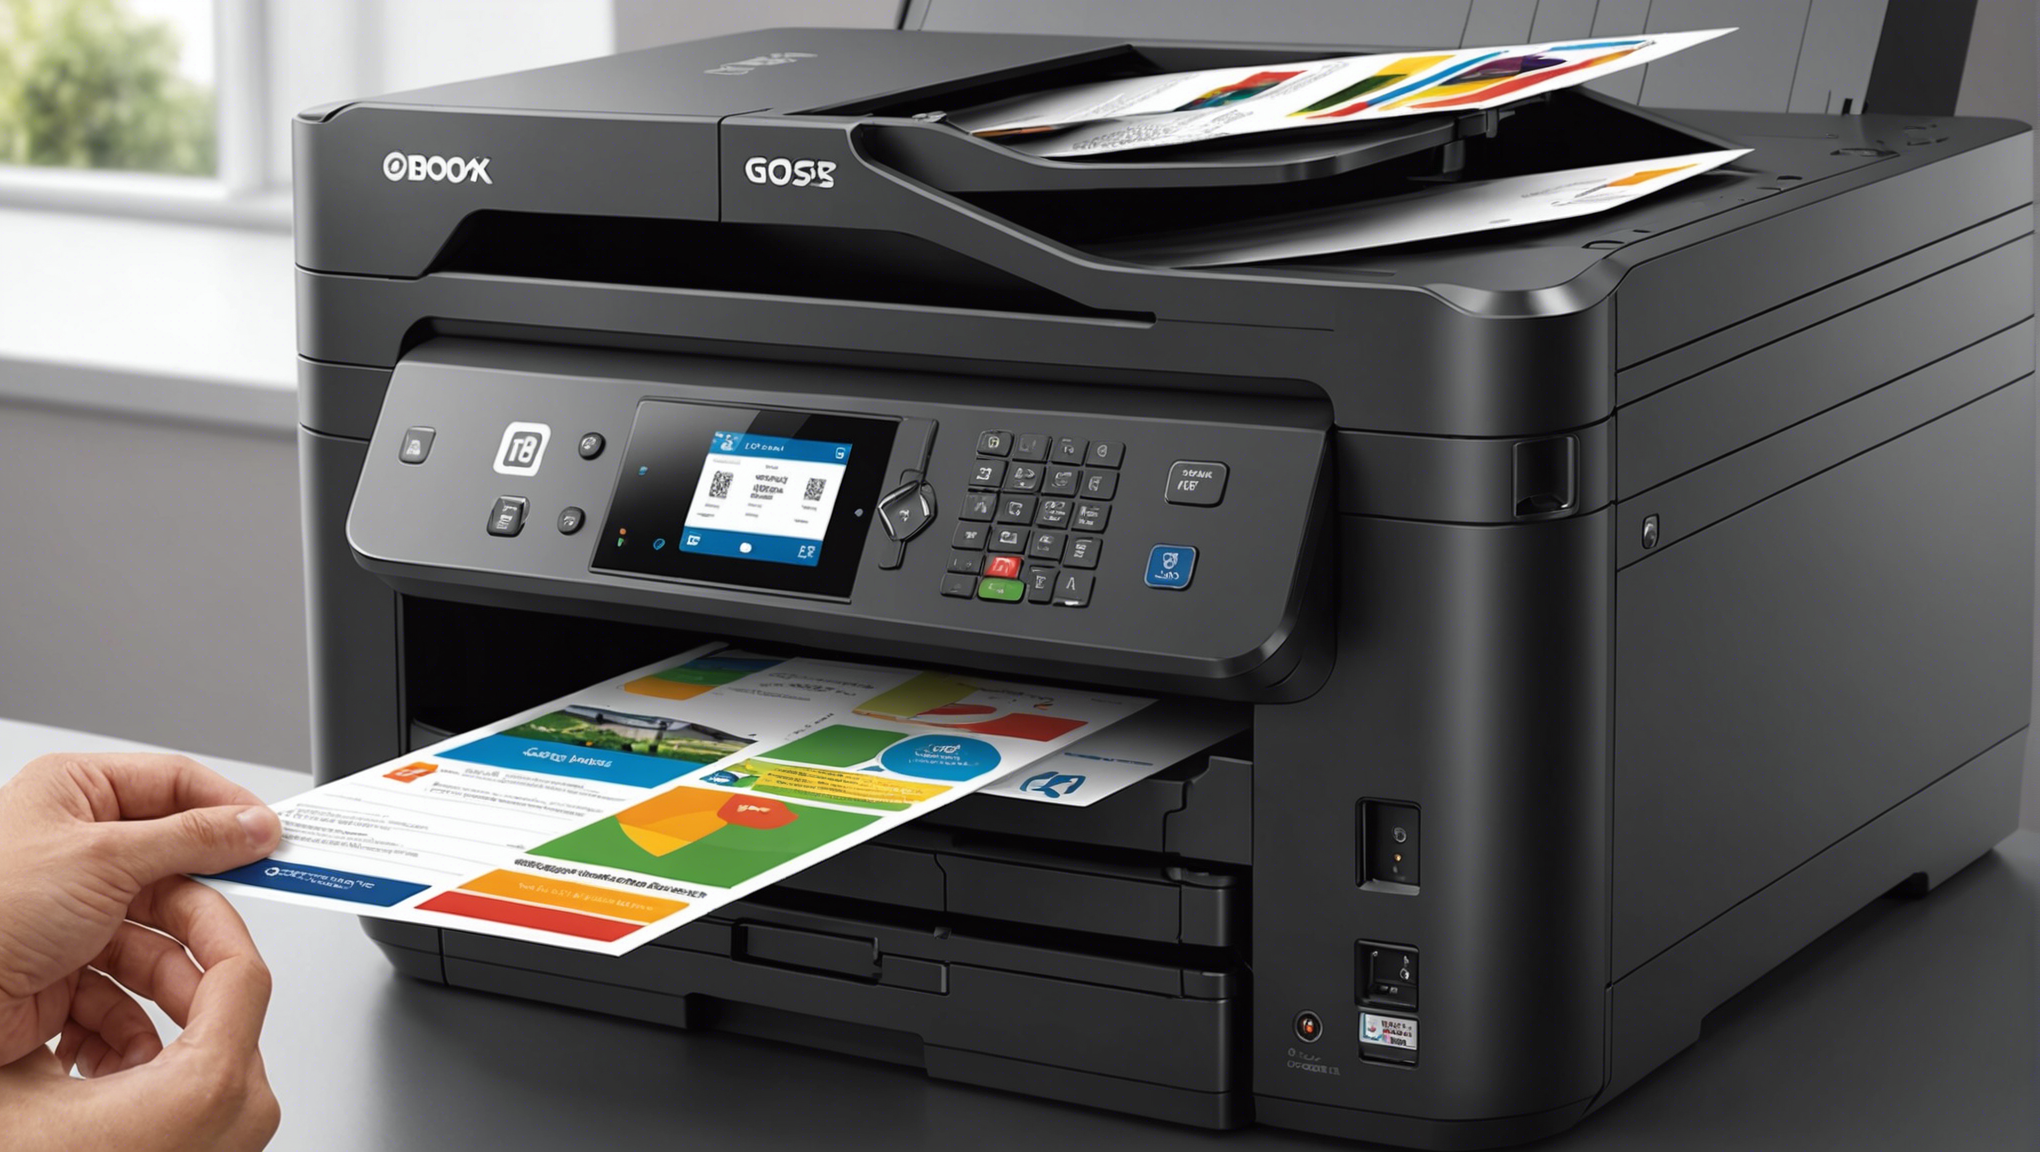 découvrez nos conseils pour choisir une imprimante professionnelle à prix abordable et de qualité. trouvez la meilleure imprimante pour vos besoins professionnels sans vous ruiner.